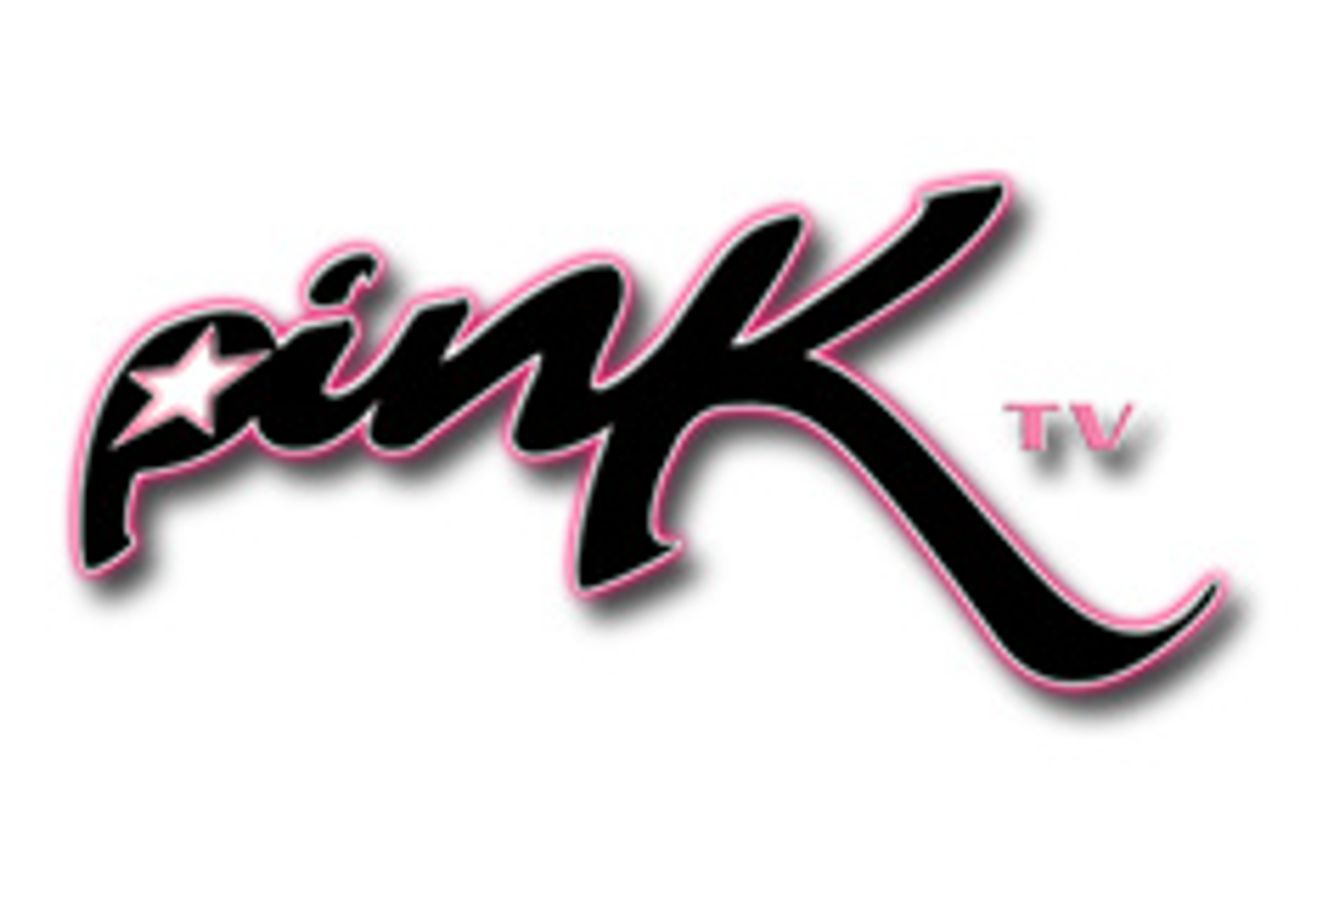 PinkTV